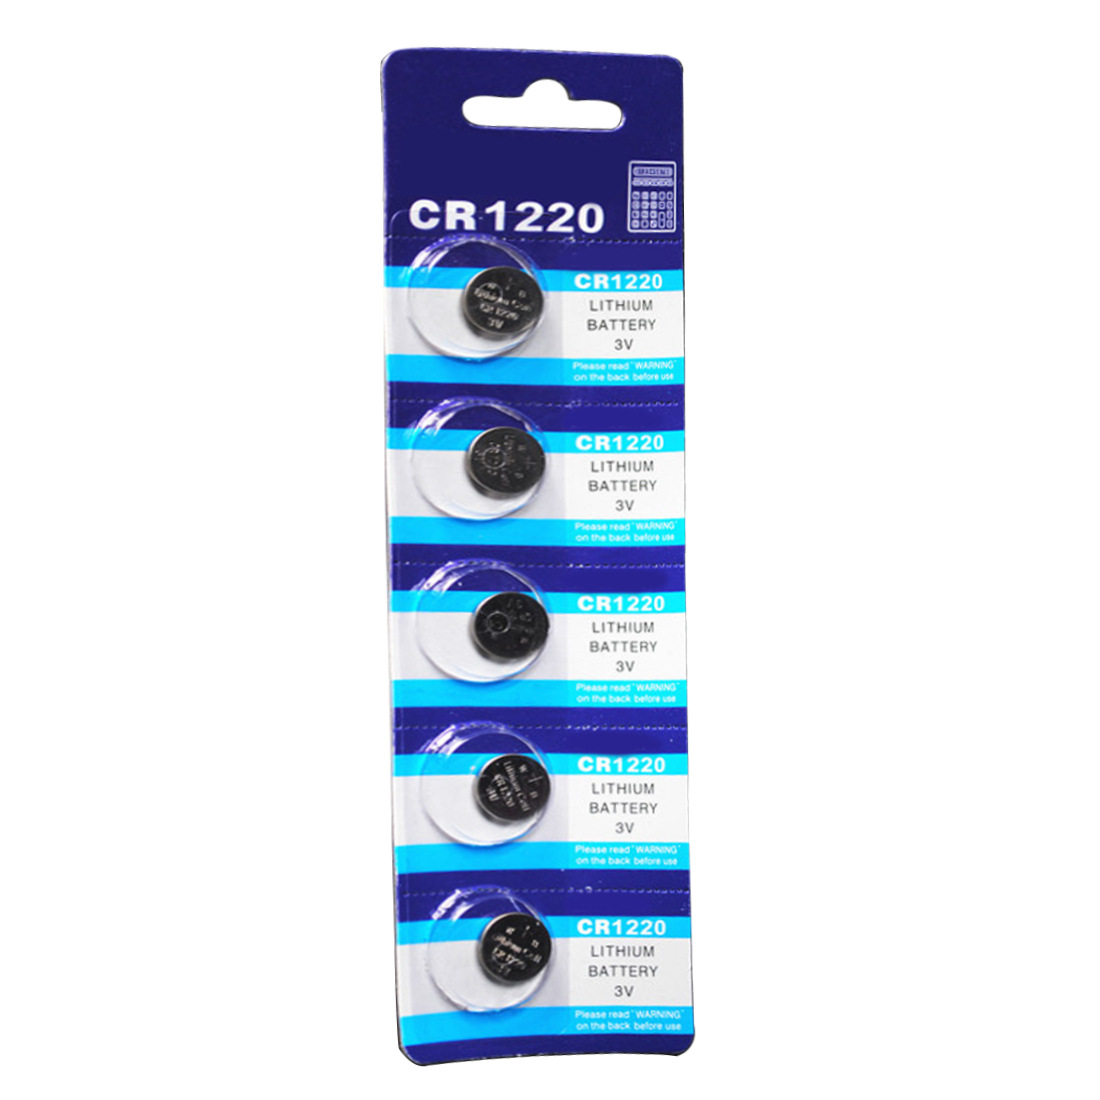 Pin Khuy Cúc Áo pin nút CR1220 3V Lithium dùng cho đồng hồ, thiết bị điện tử